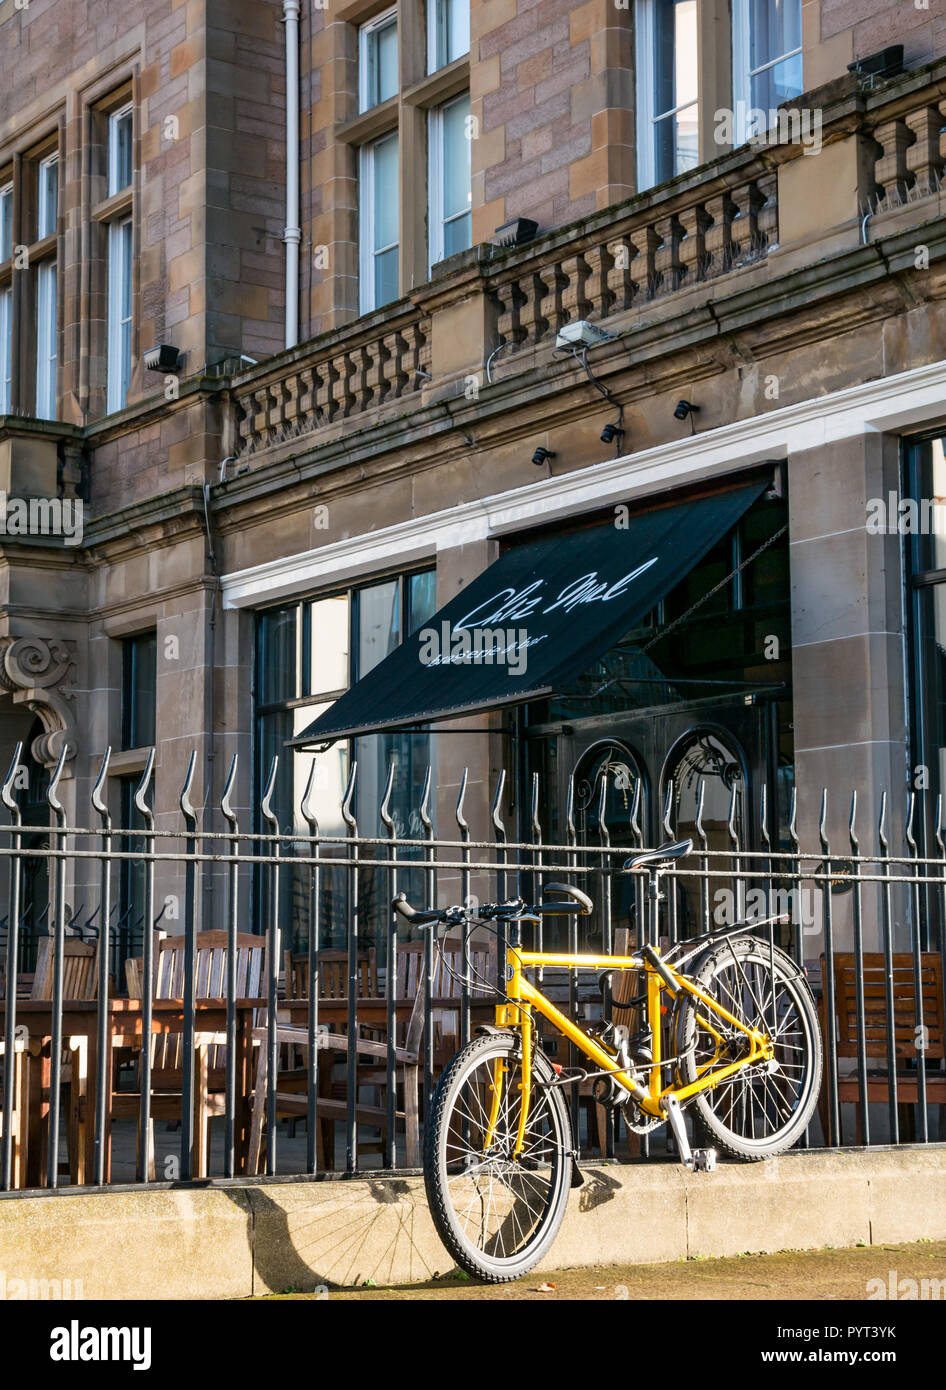 Vor Chez Mals Restaurant Brasserie im Malmaison Hotel mit gelben Fahrrad Geländer gesperrt, das Ufer, Leith, Edinburgh, Schottland, Großbritannien Stockfoto